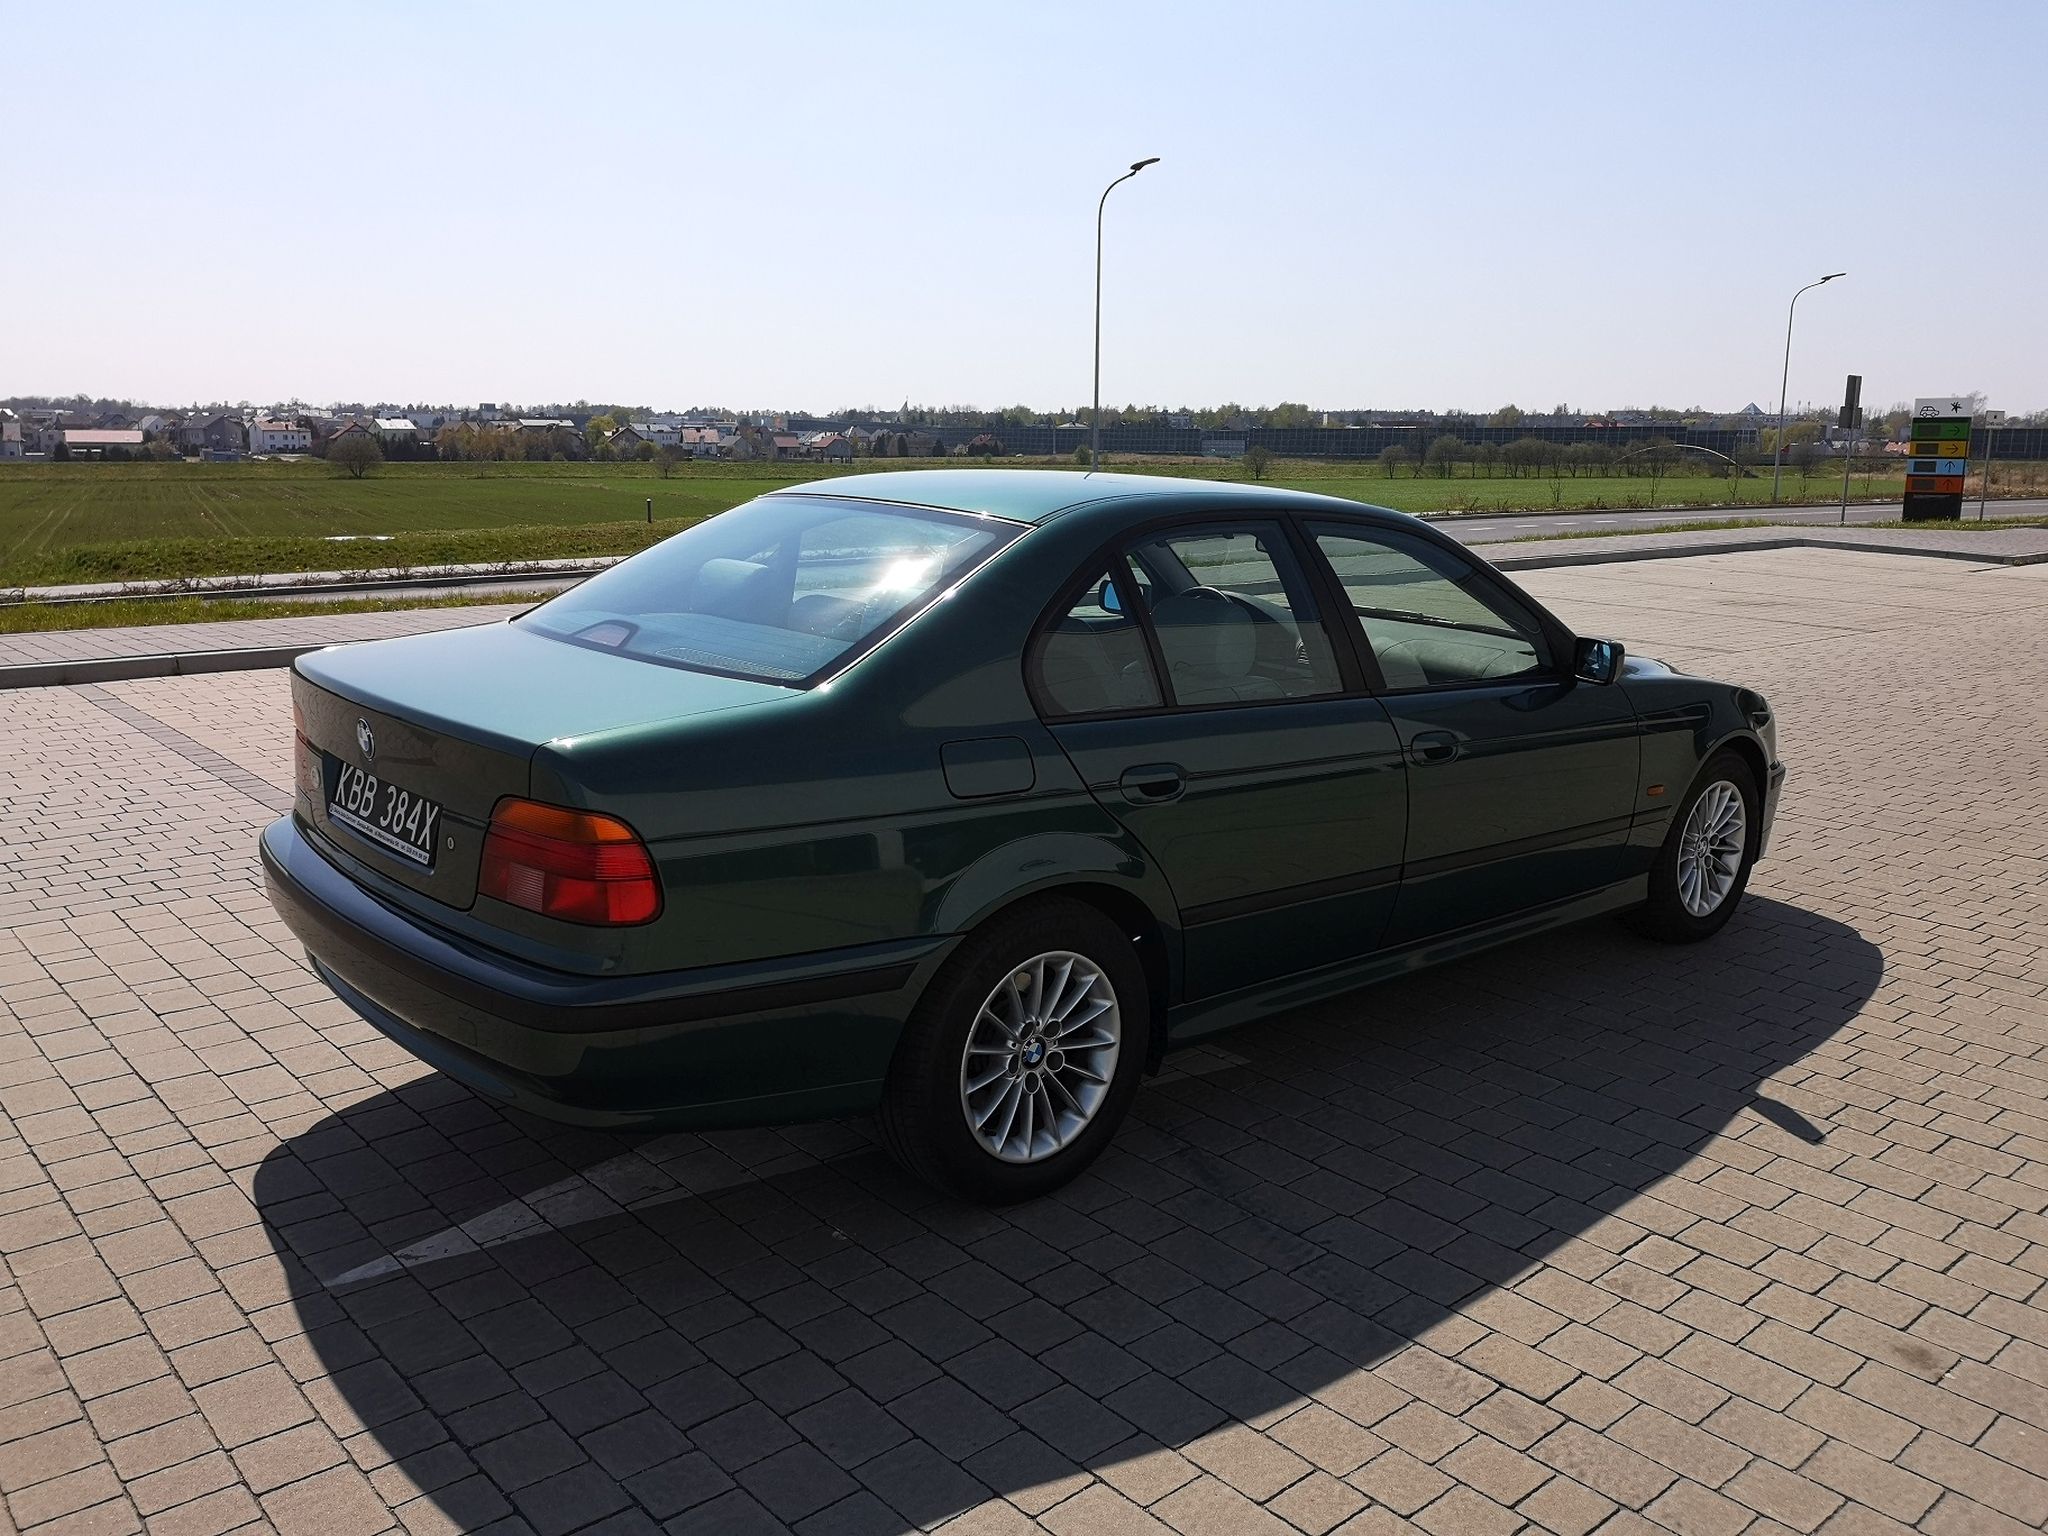 BMW 530d E39 1999 42000 PLN Tychy Giełda klasyków